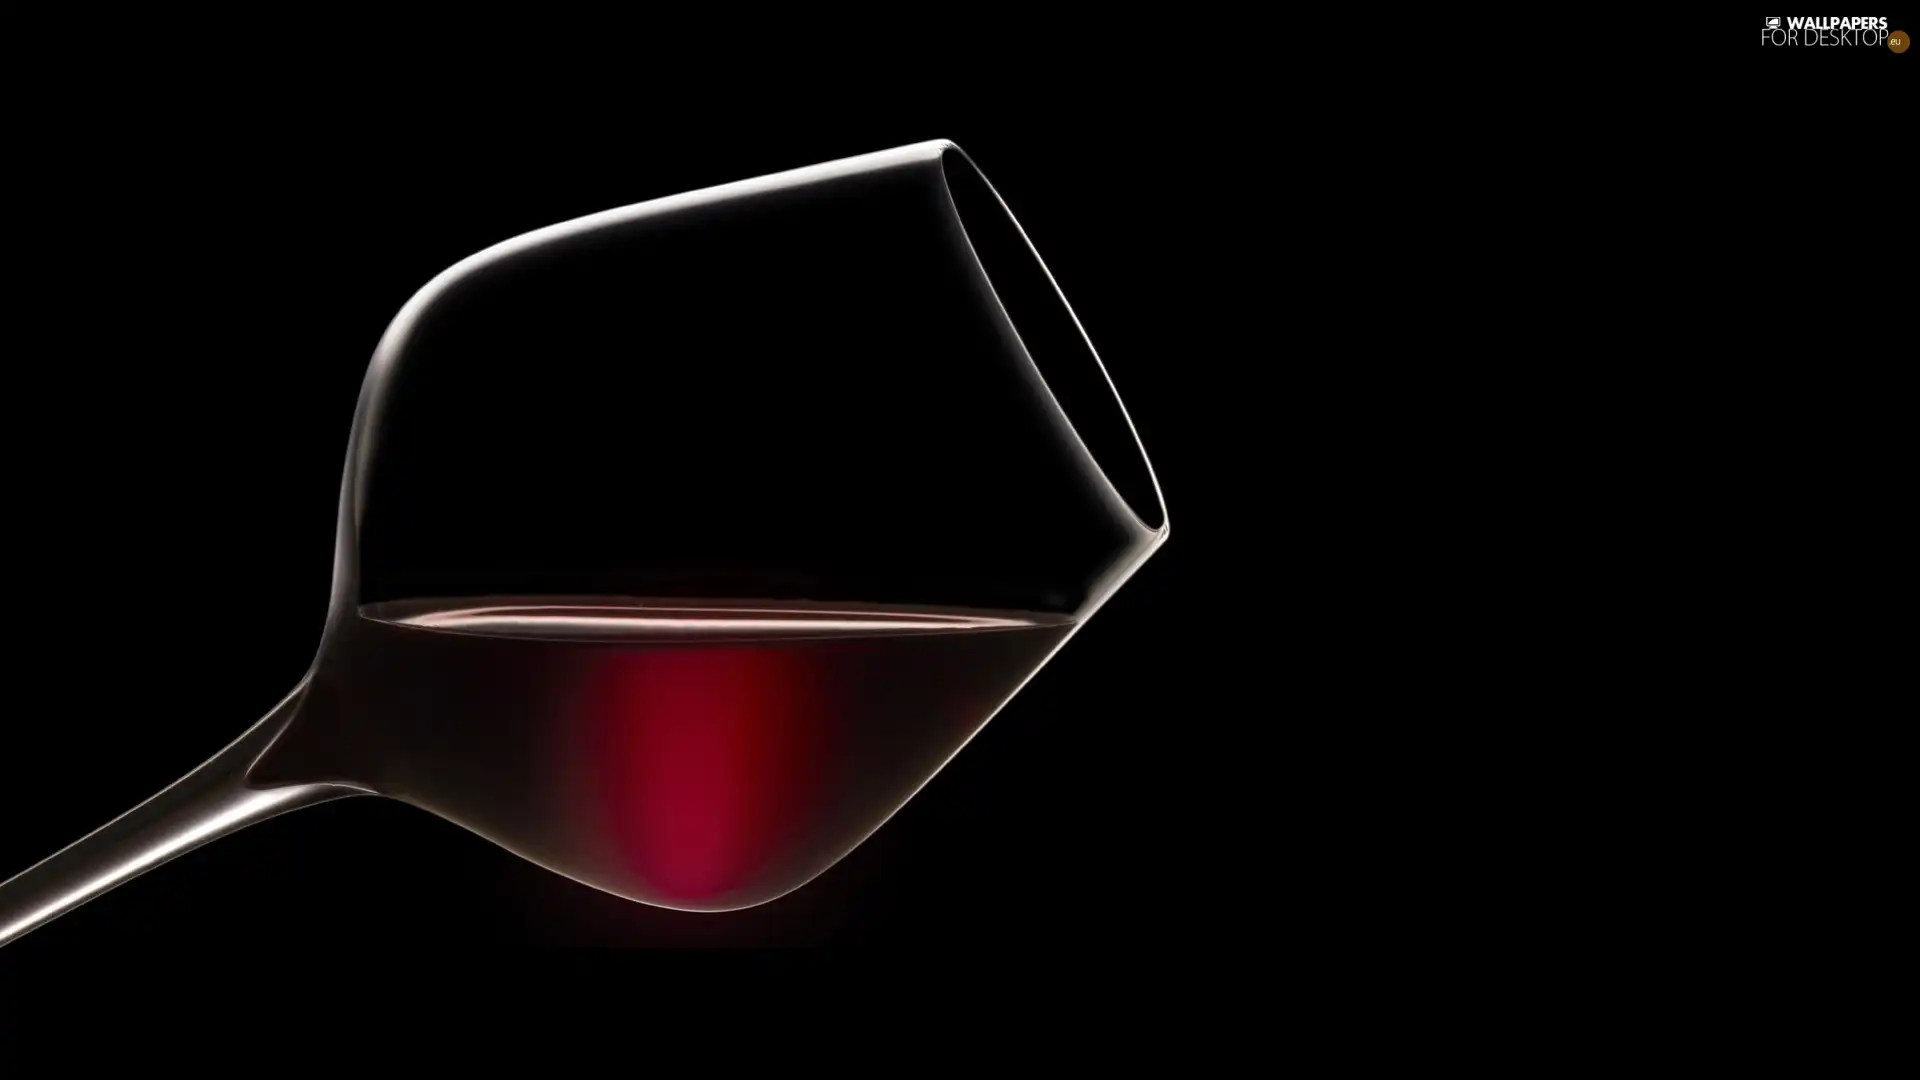 Wine, wine glass